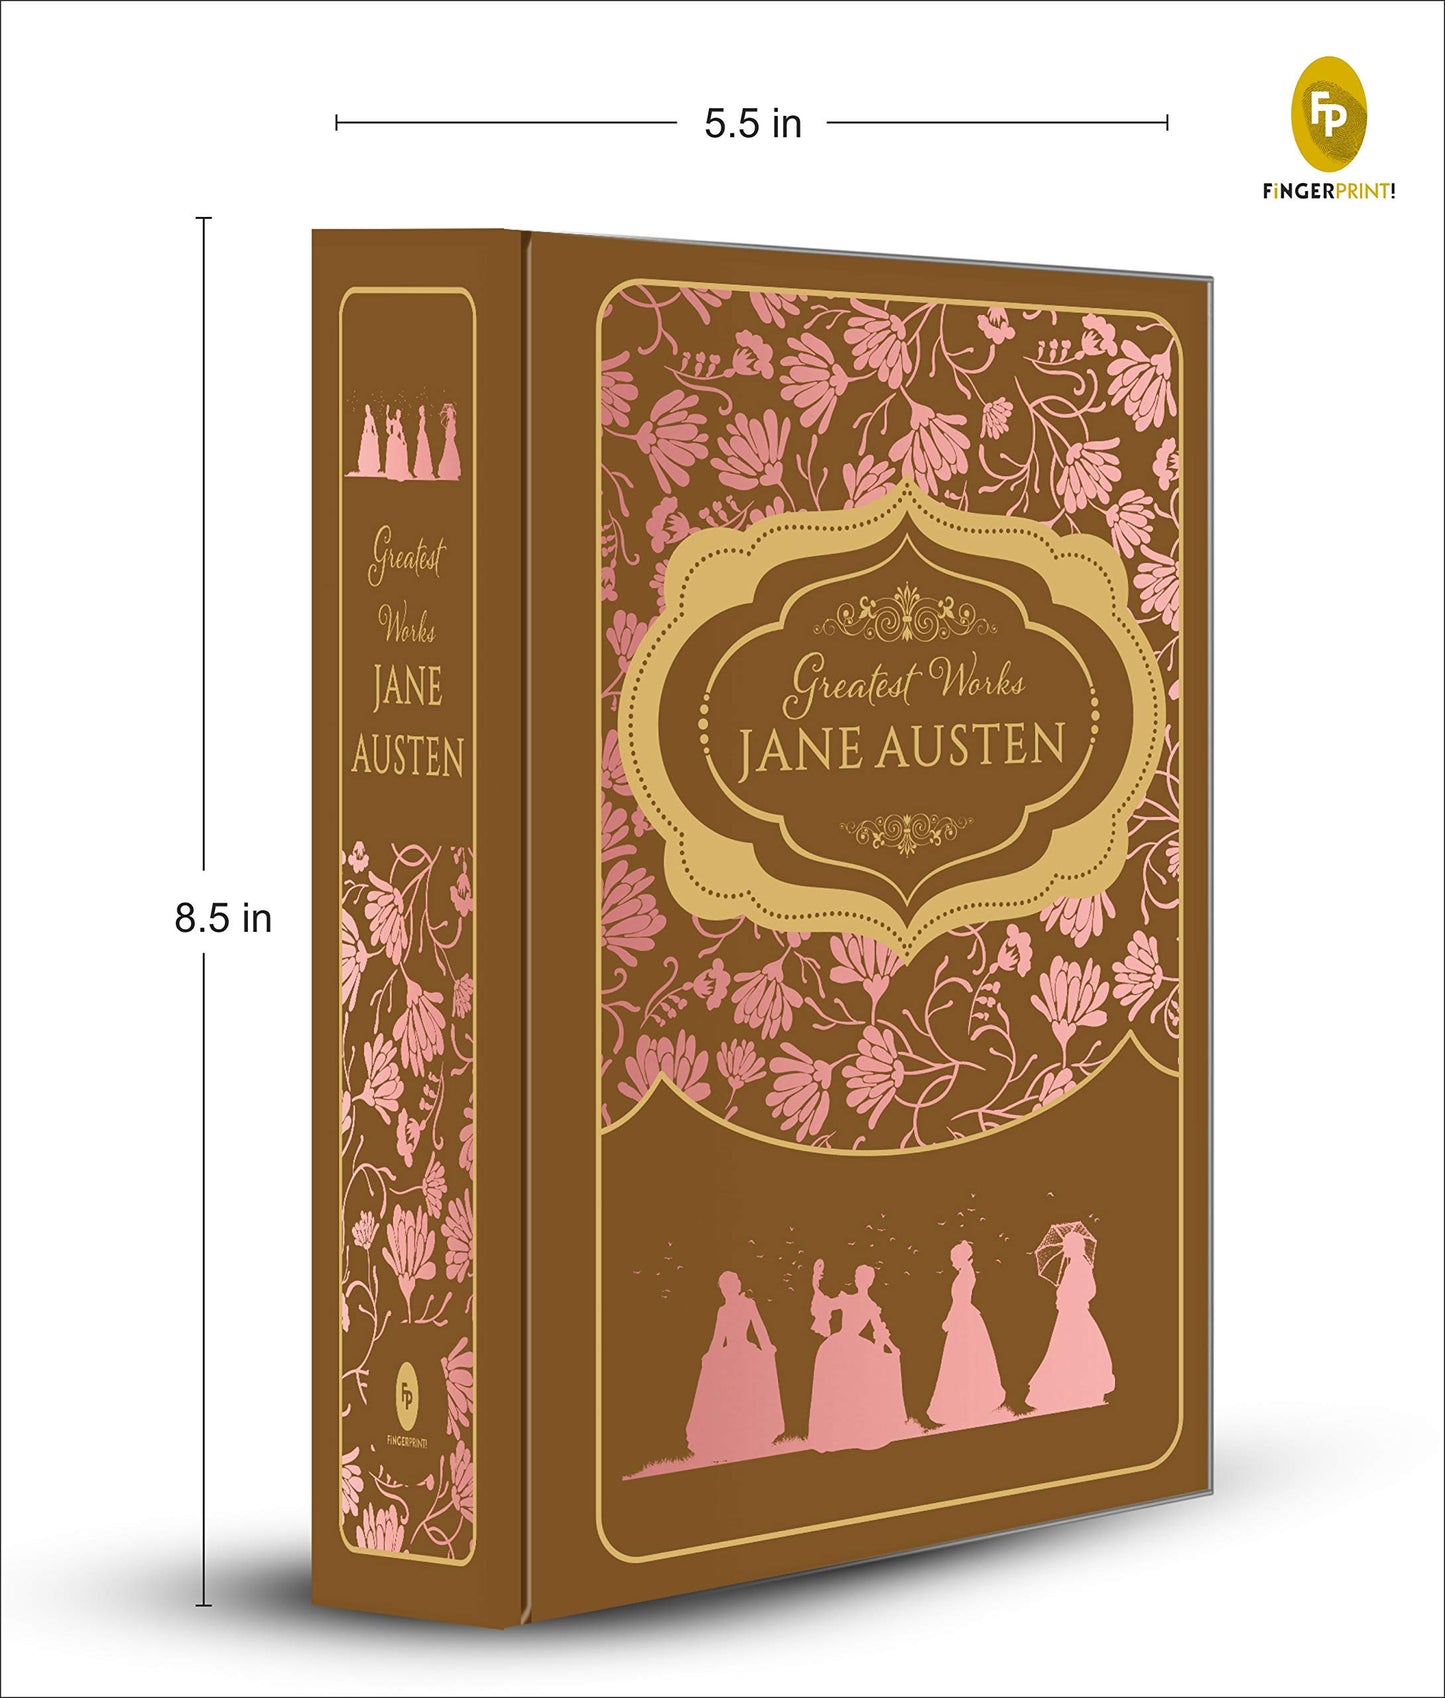 Greatest Works: Jane Austen